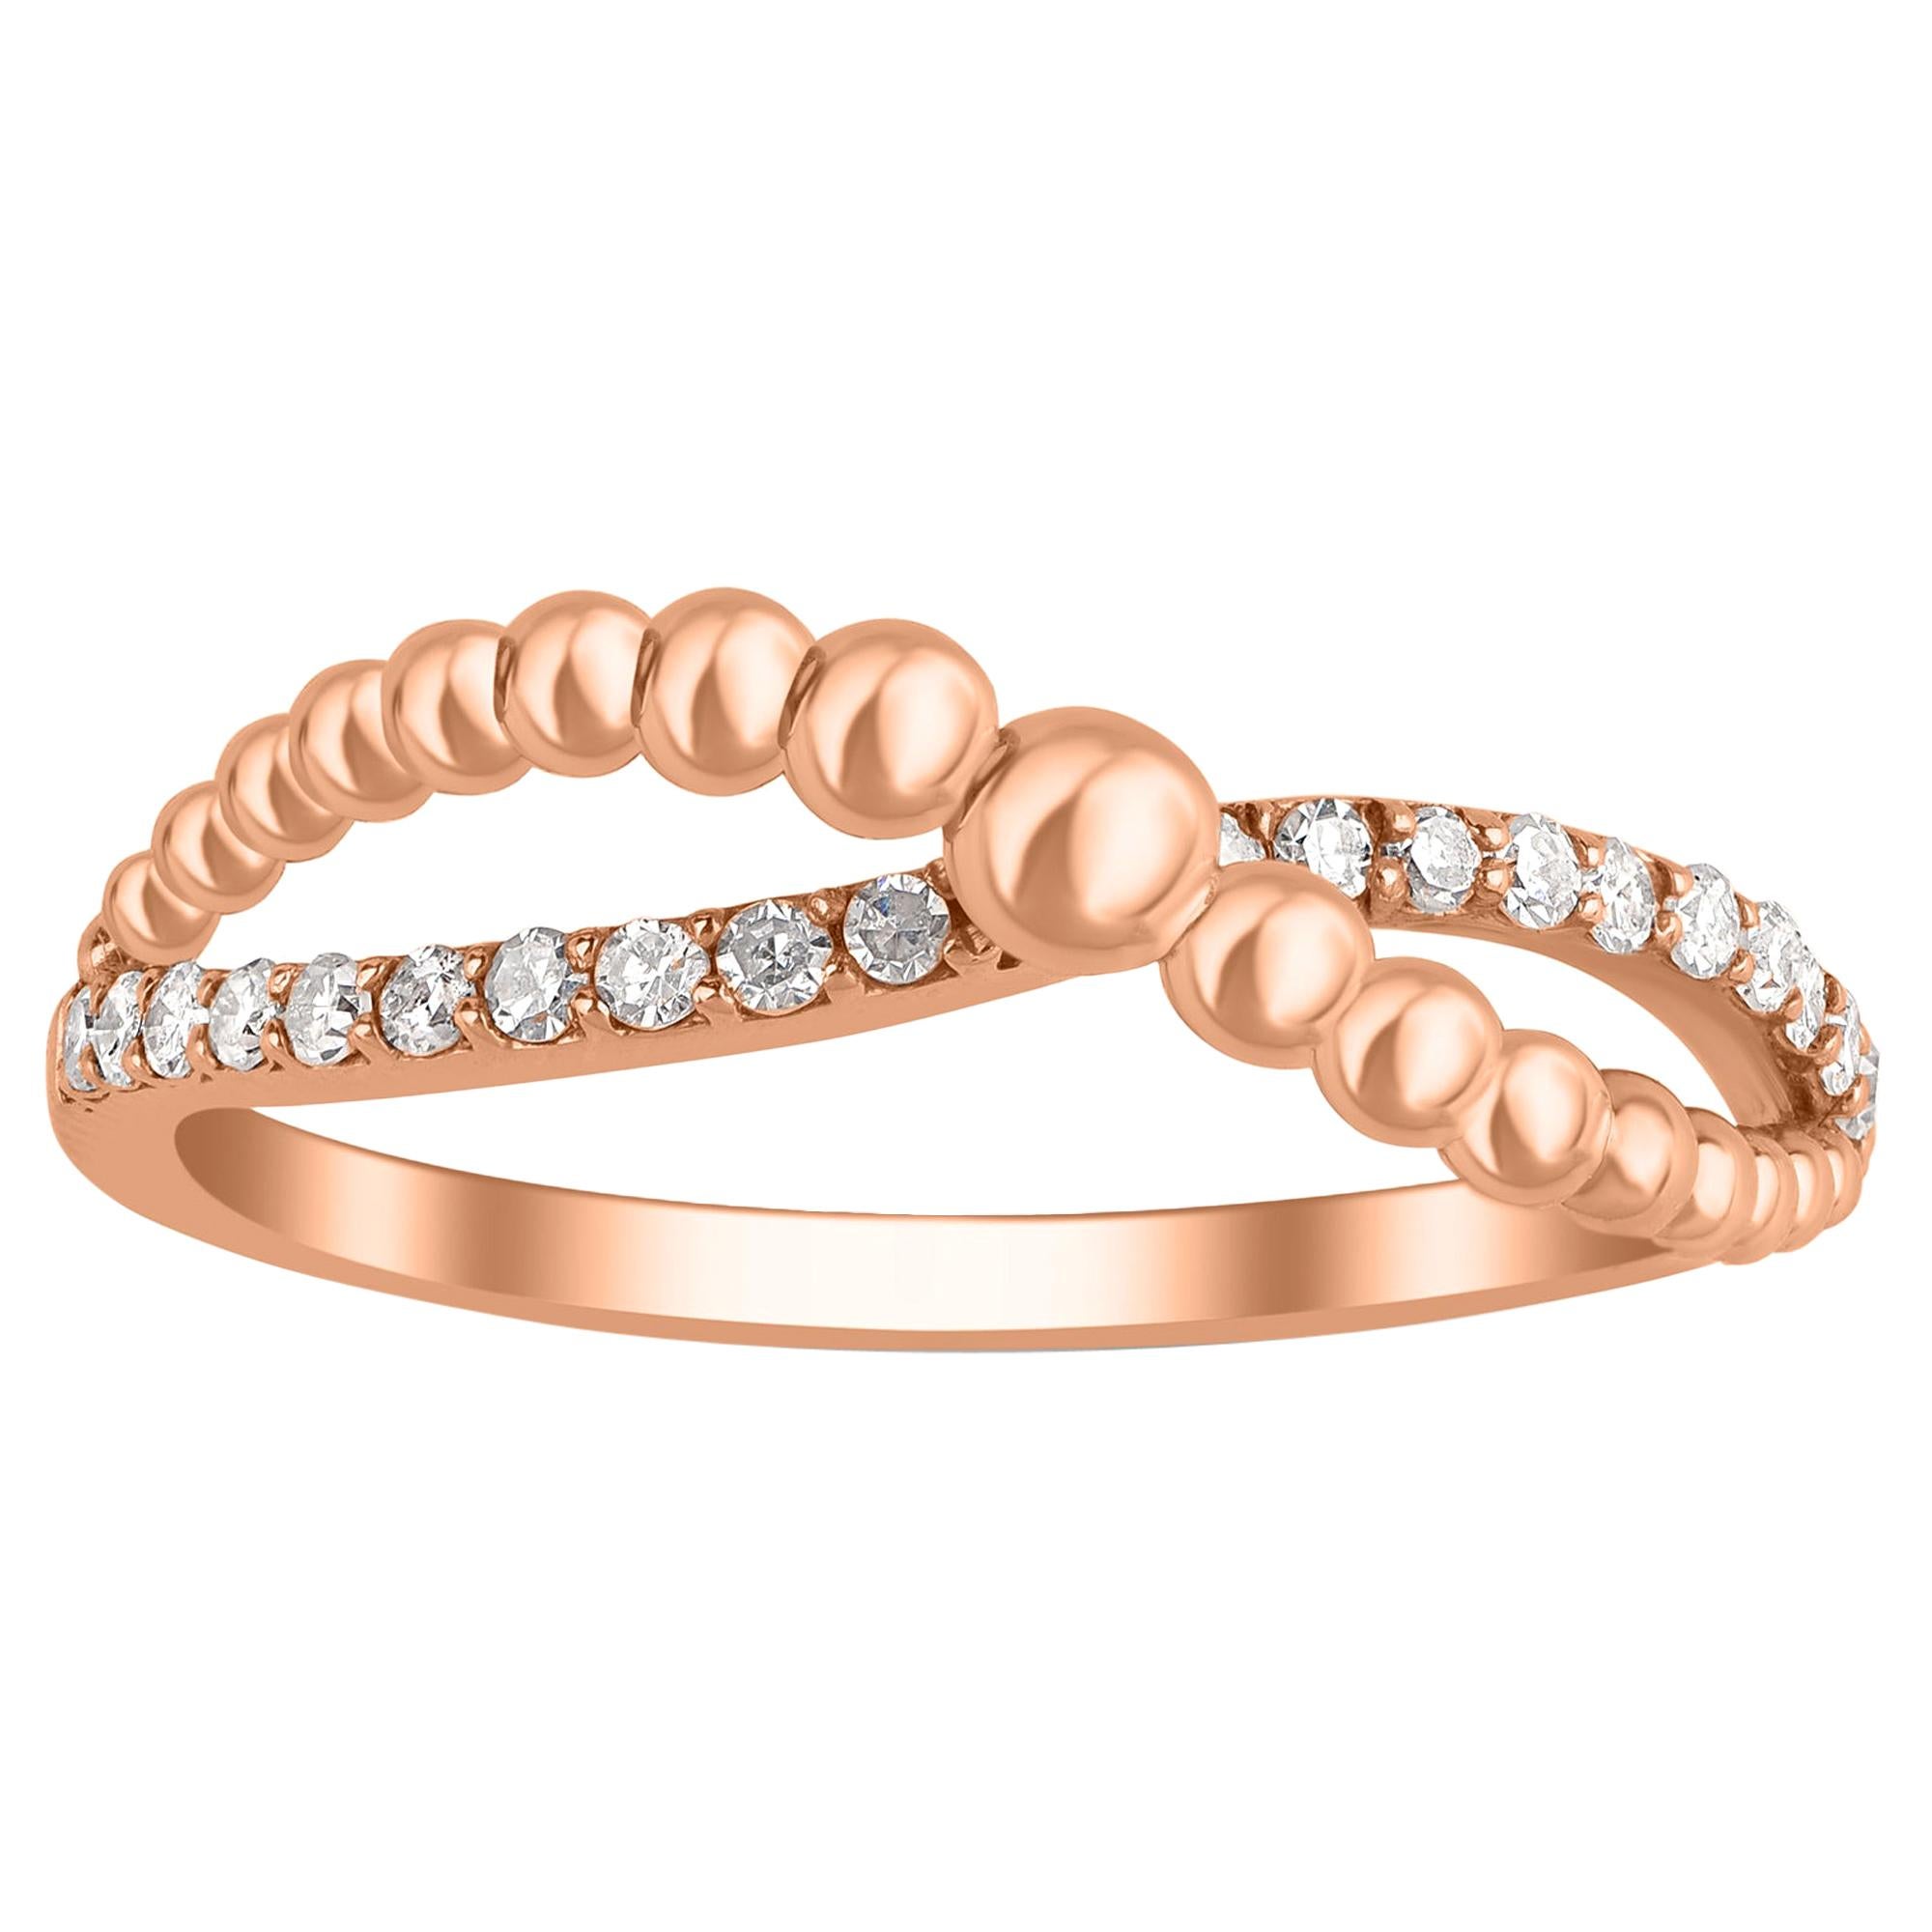 Magnifique bague croisée en or rose 18 carats avec perles et diamants 0,15 carat TJD